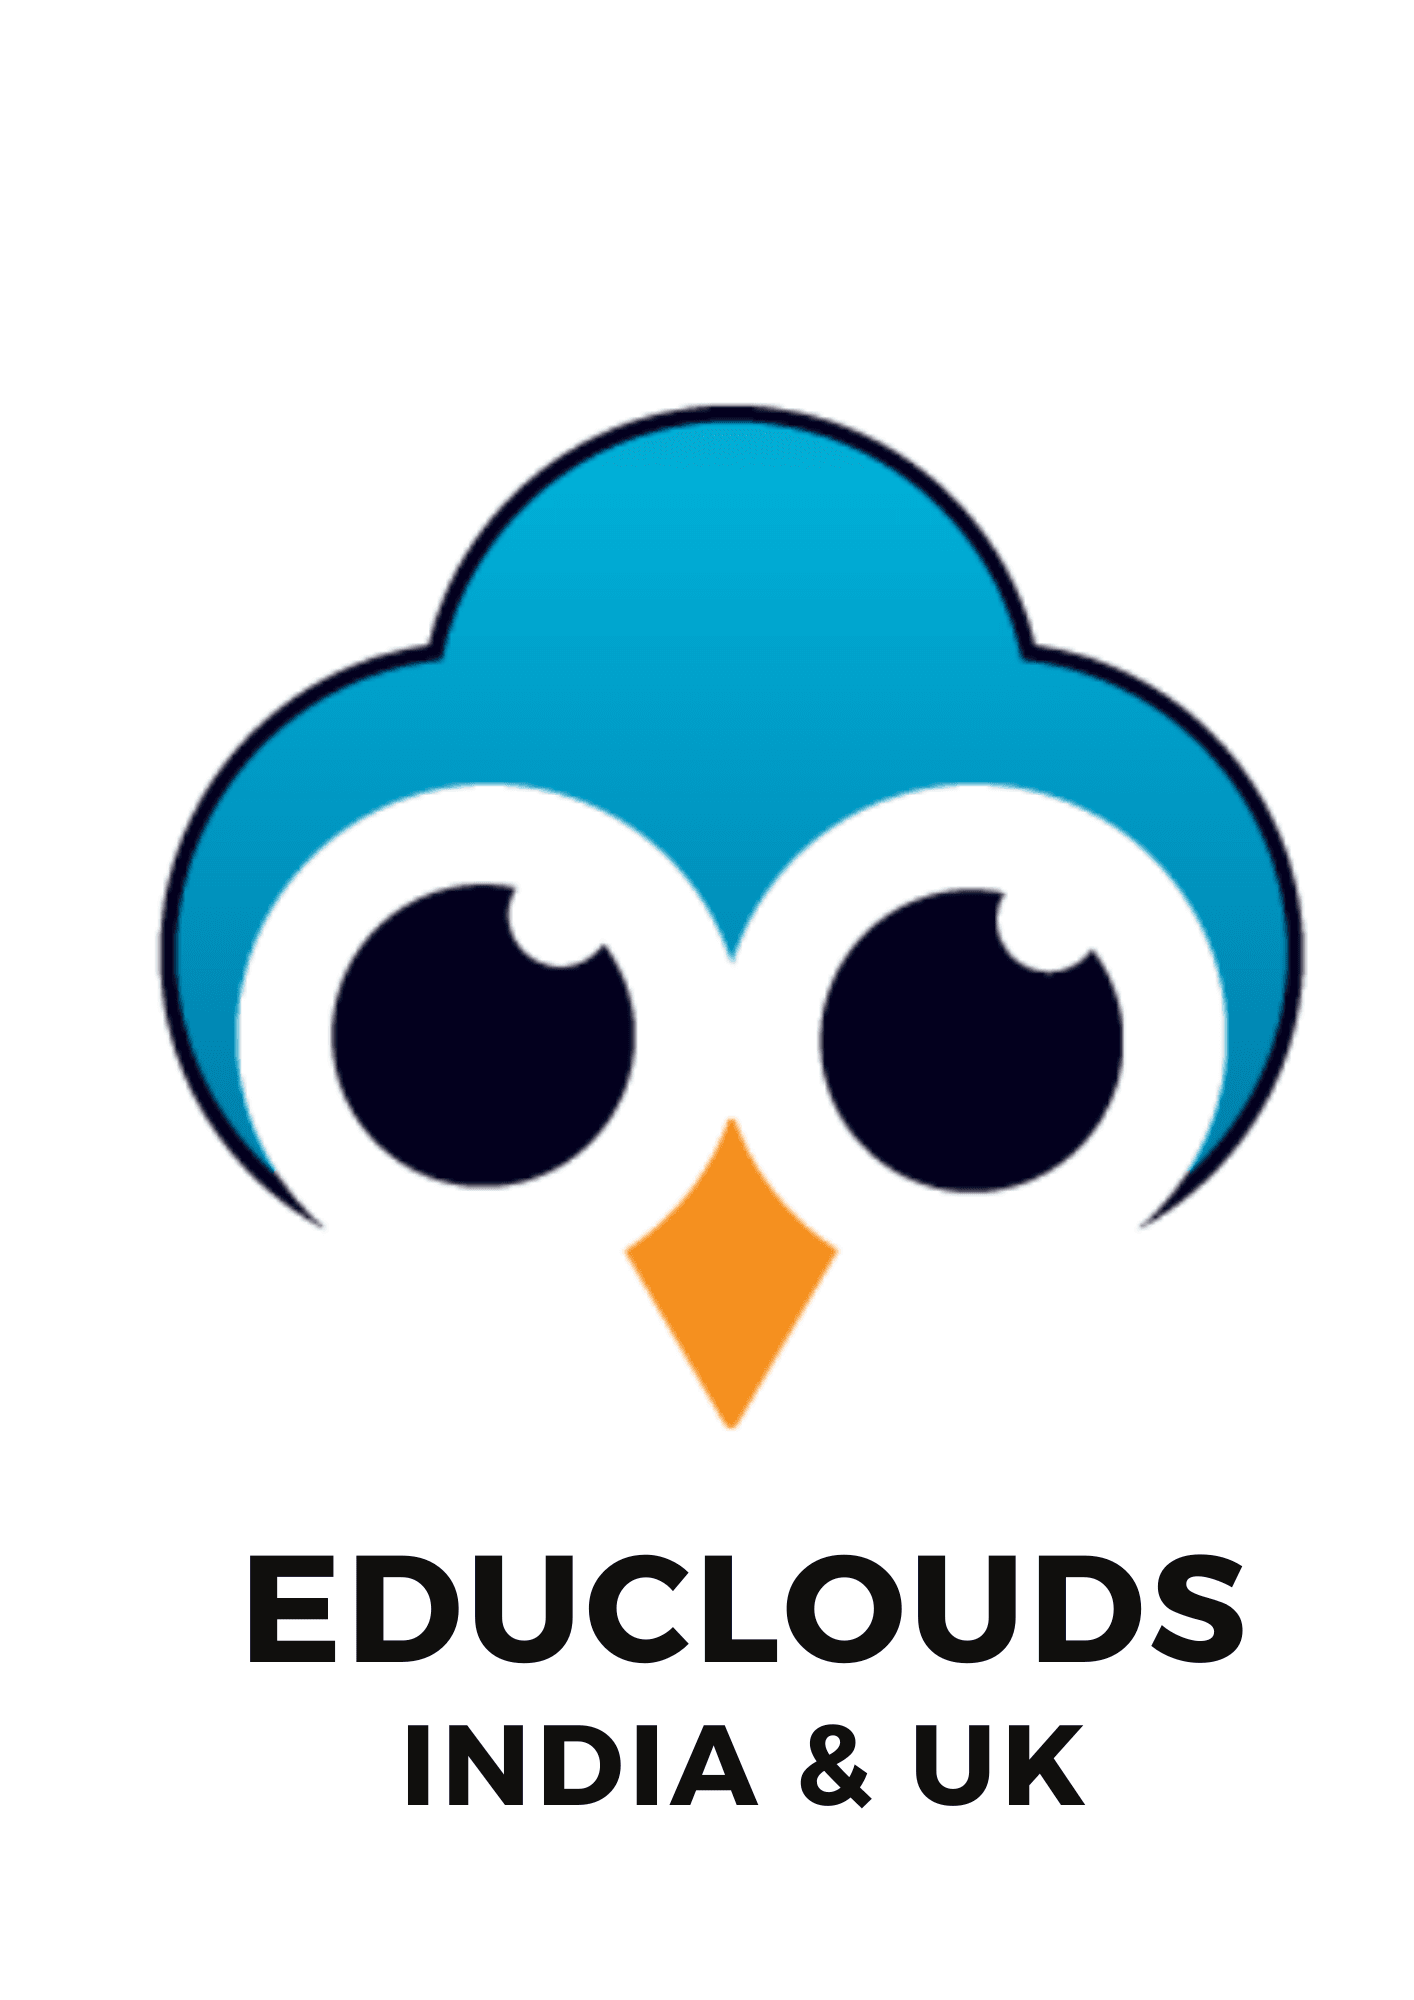 Educlouds